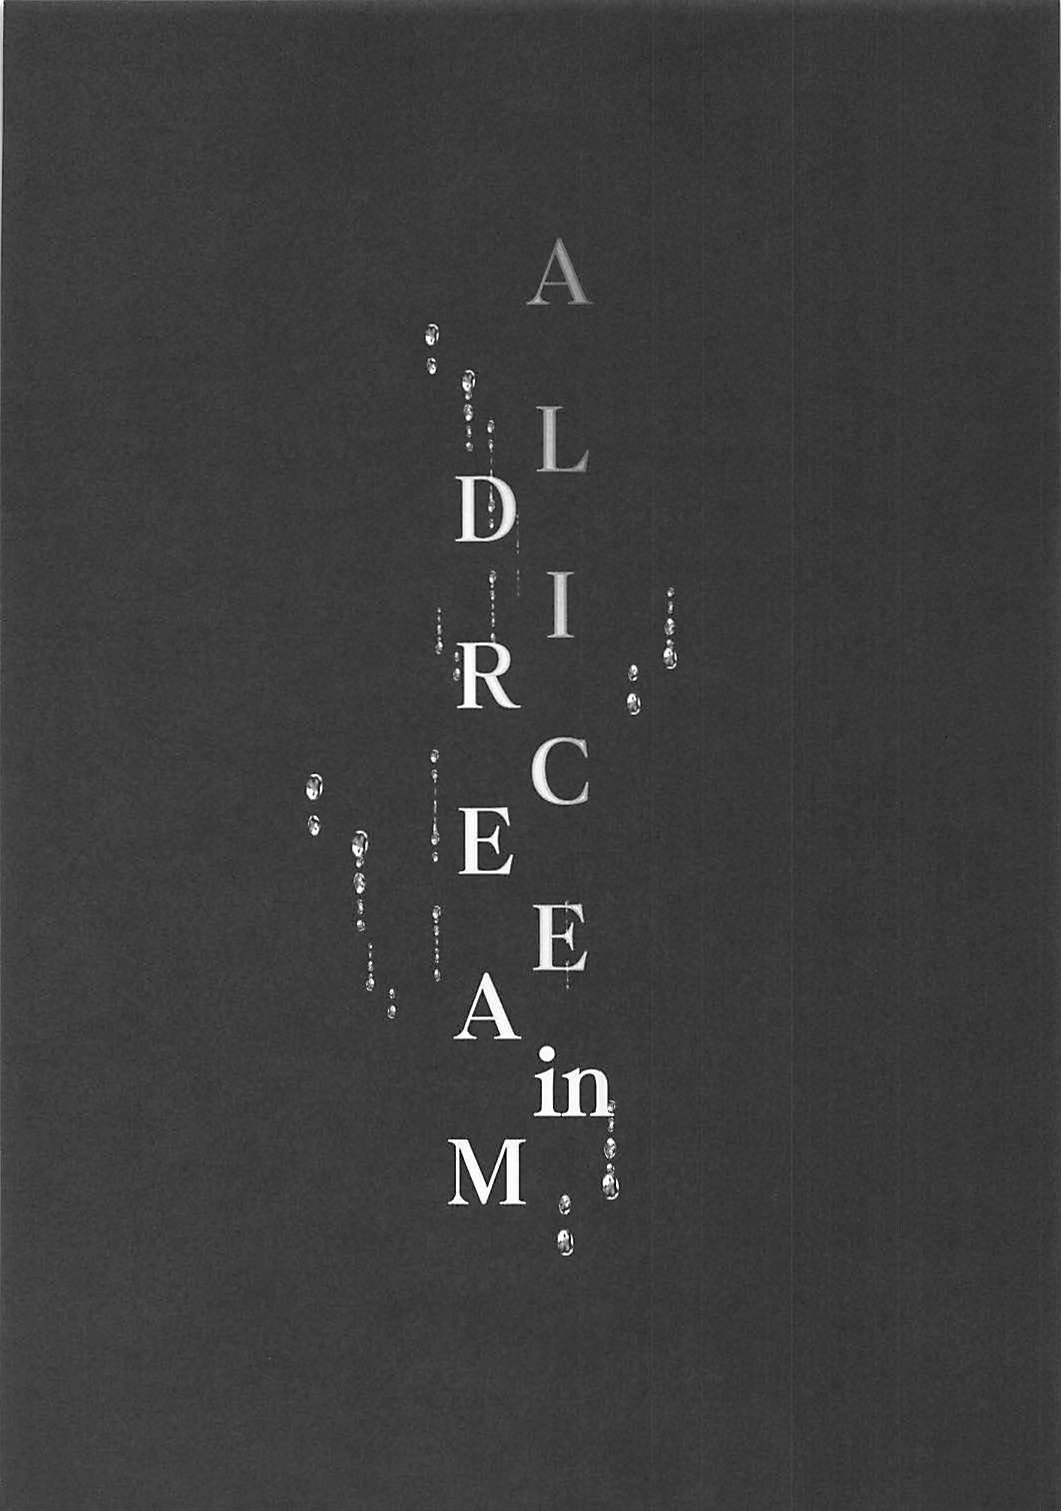 (COMIC1☆13) [有葉と愉快な仲間たち (有葉)] ALICE in DREAM (アイドルマスター シンデレラガールズ)